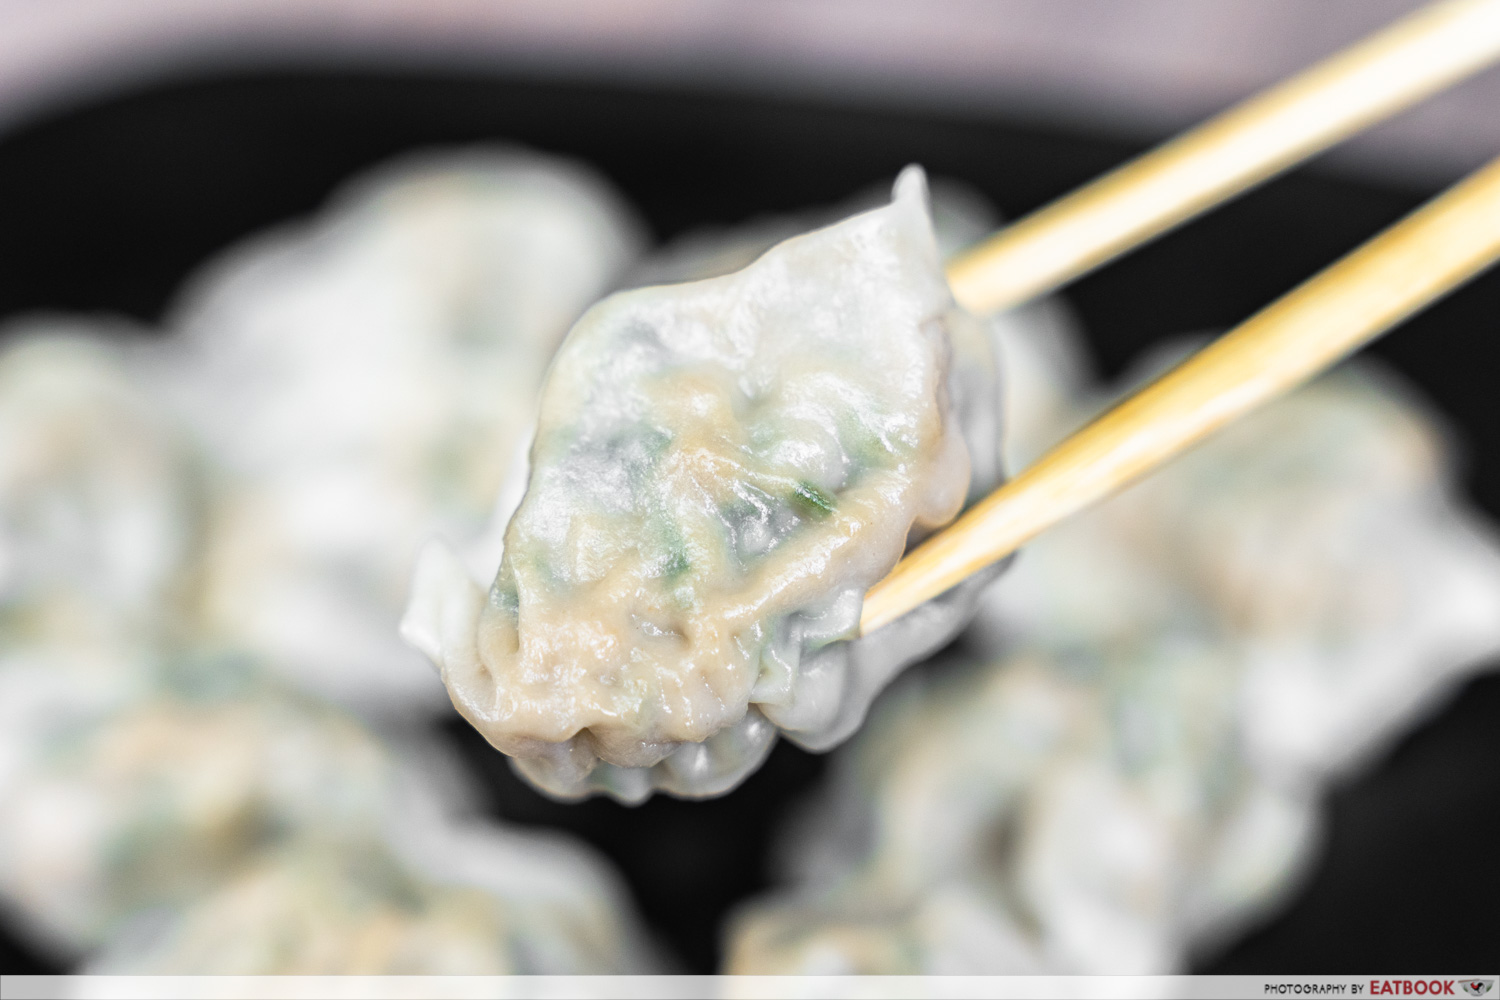 tian jin fong kee - dumpling close up